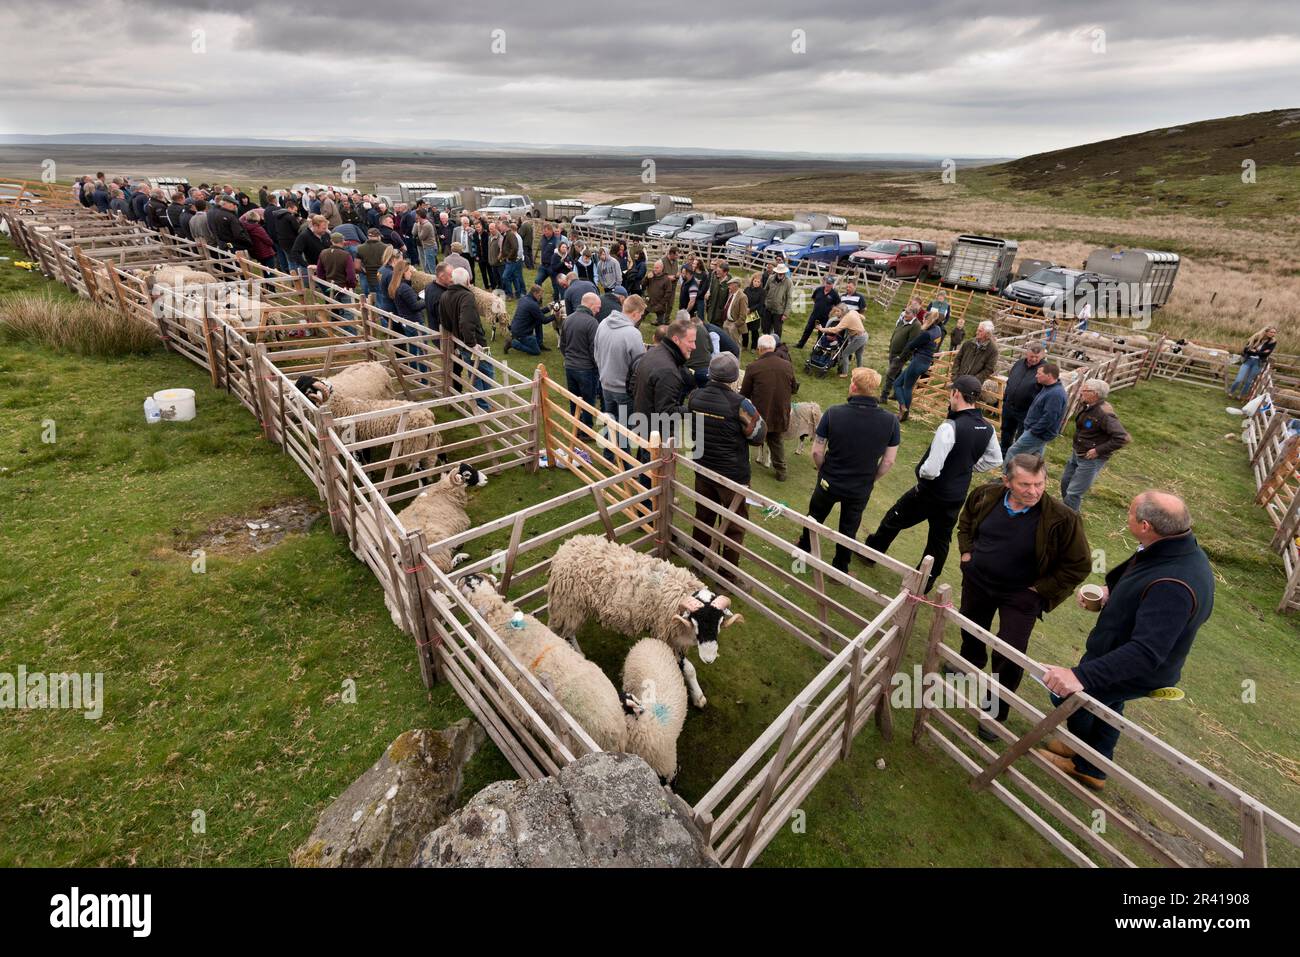 El evento anual Tan Hill Open Swaledale Sheep Show, celebrado en el páramo en el pub más alto de Gran Bretaña (1.732ft), el Tan Hill Inn, North Yorkshire, Reino Unido Foto de stock